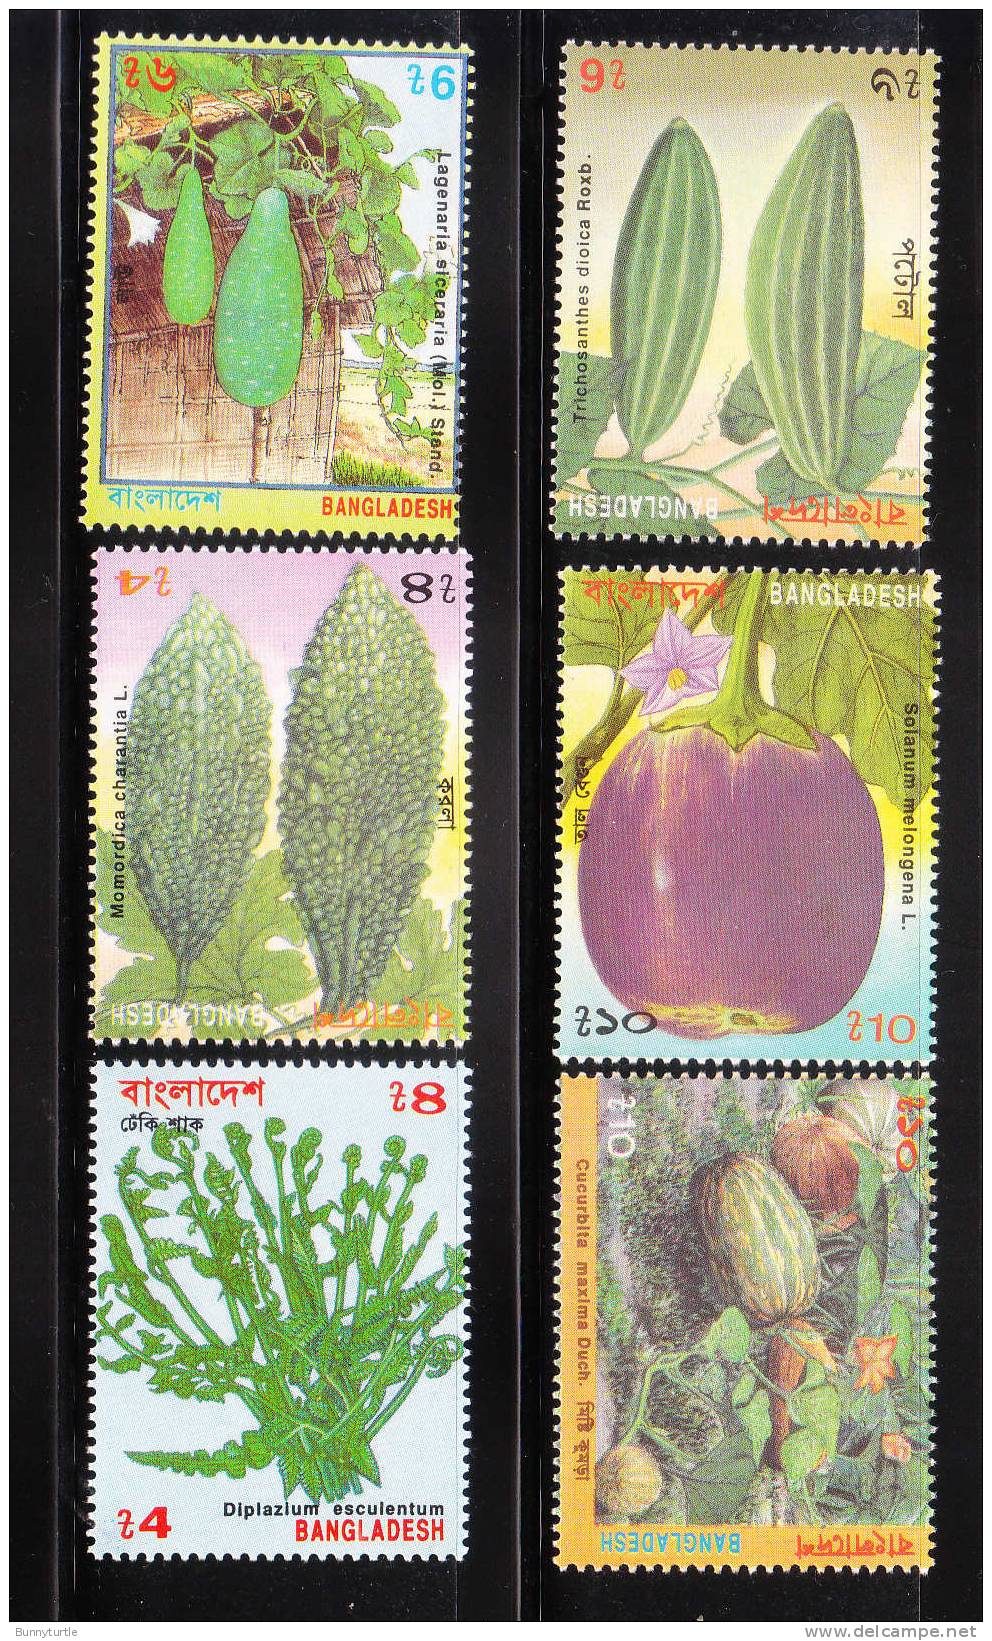 Bangladesh 1994 Vegetables Plants MNH - Bangladesh